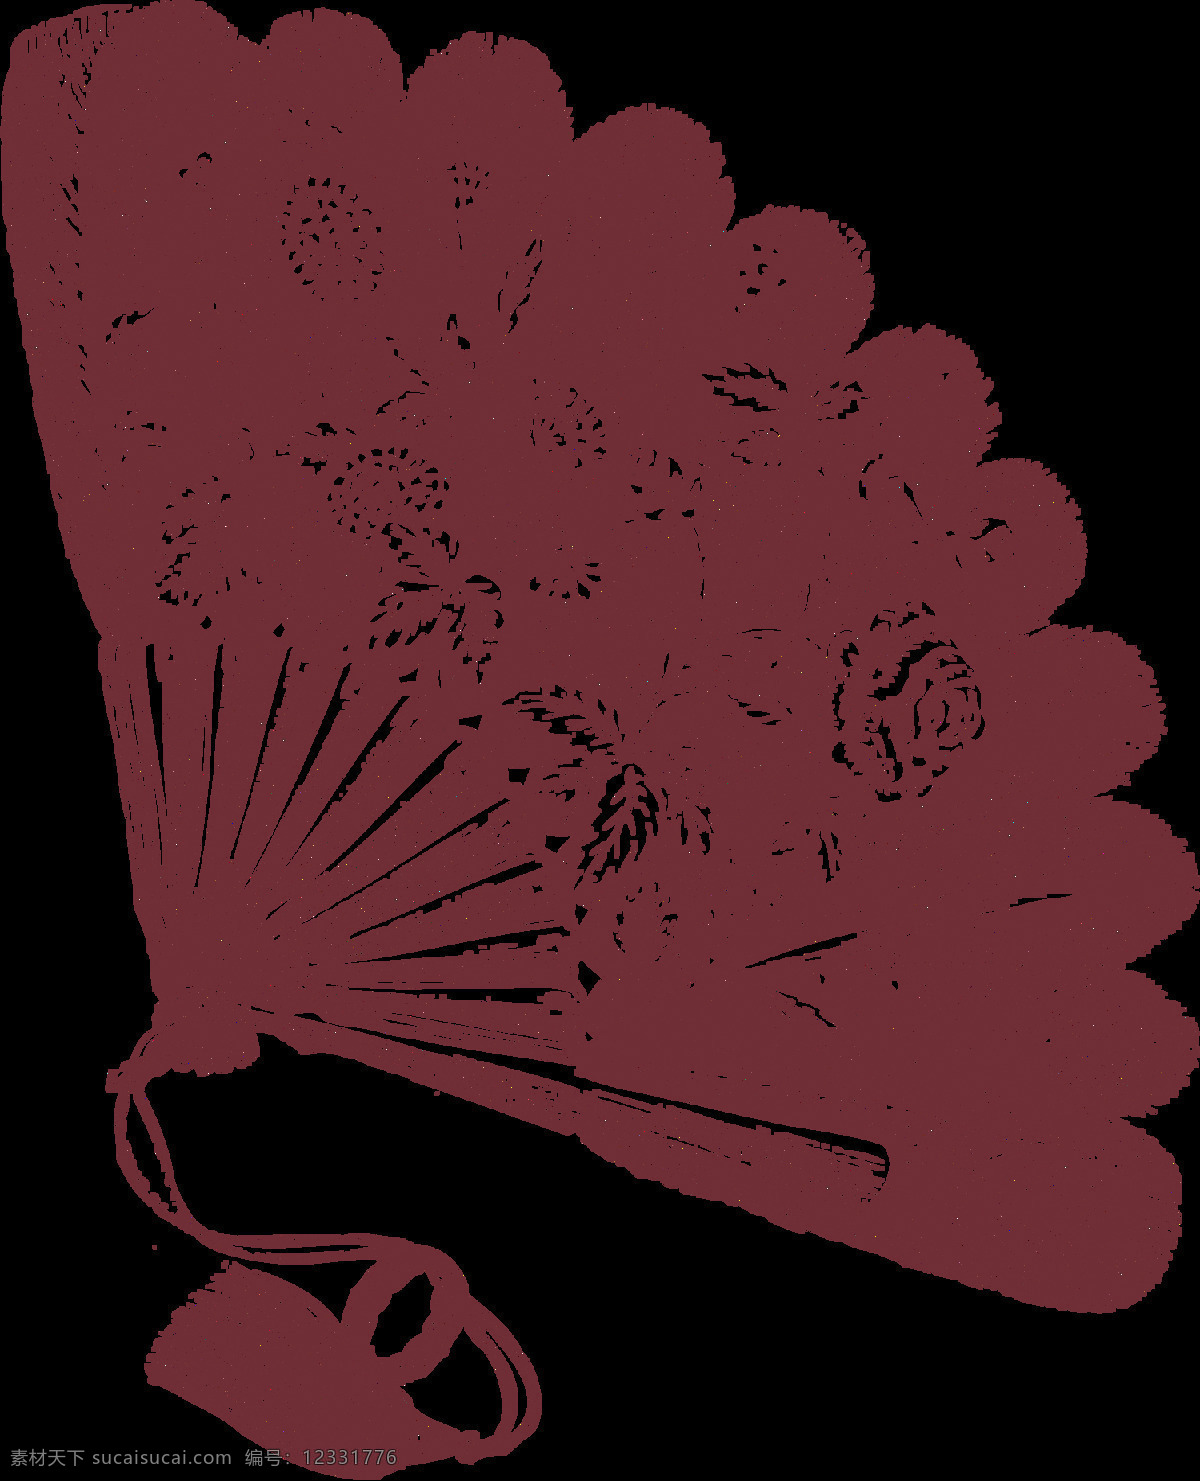 精美 花式 羽毛 折扇 图案 羽毛折扇 中国风折扇 舞扇 设计素材 png素材 古典风 红色 广告扇 花纹艺术 装饰素材 抽象元素 艺术折扇 精美折扇